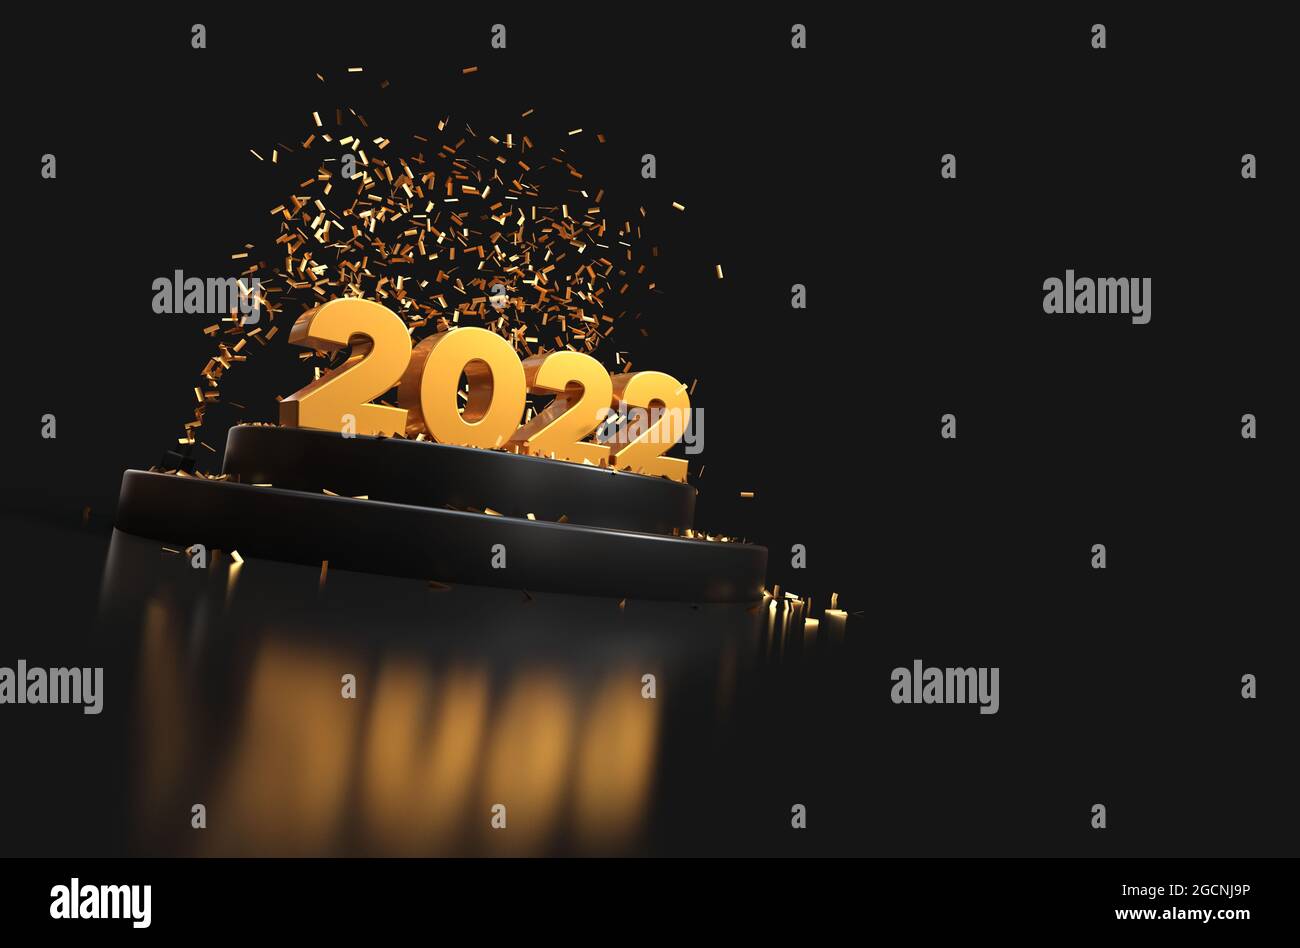 Bonne année 2022 - rendu 3D - couleurs or et noir Banque D'Images